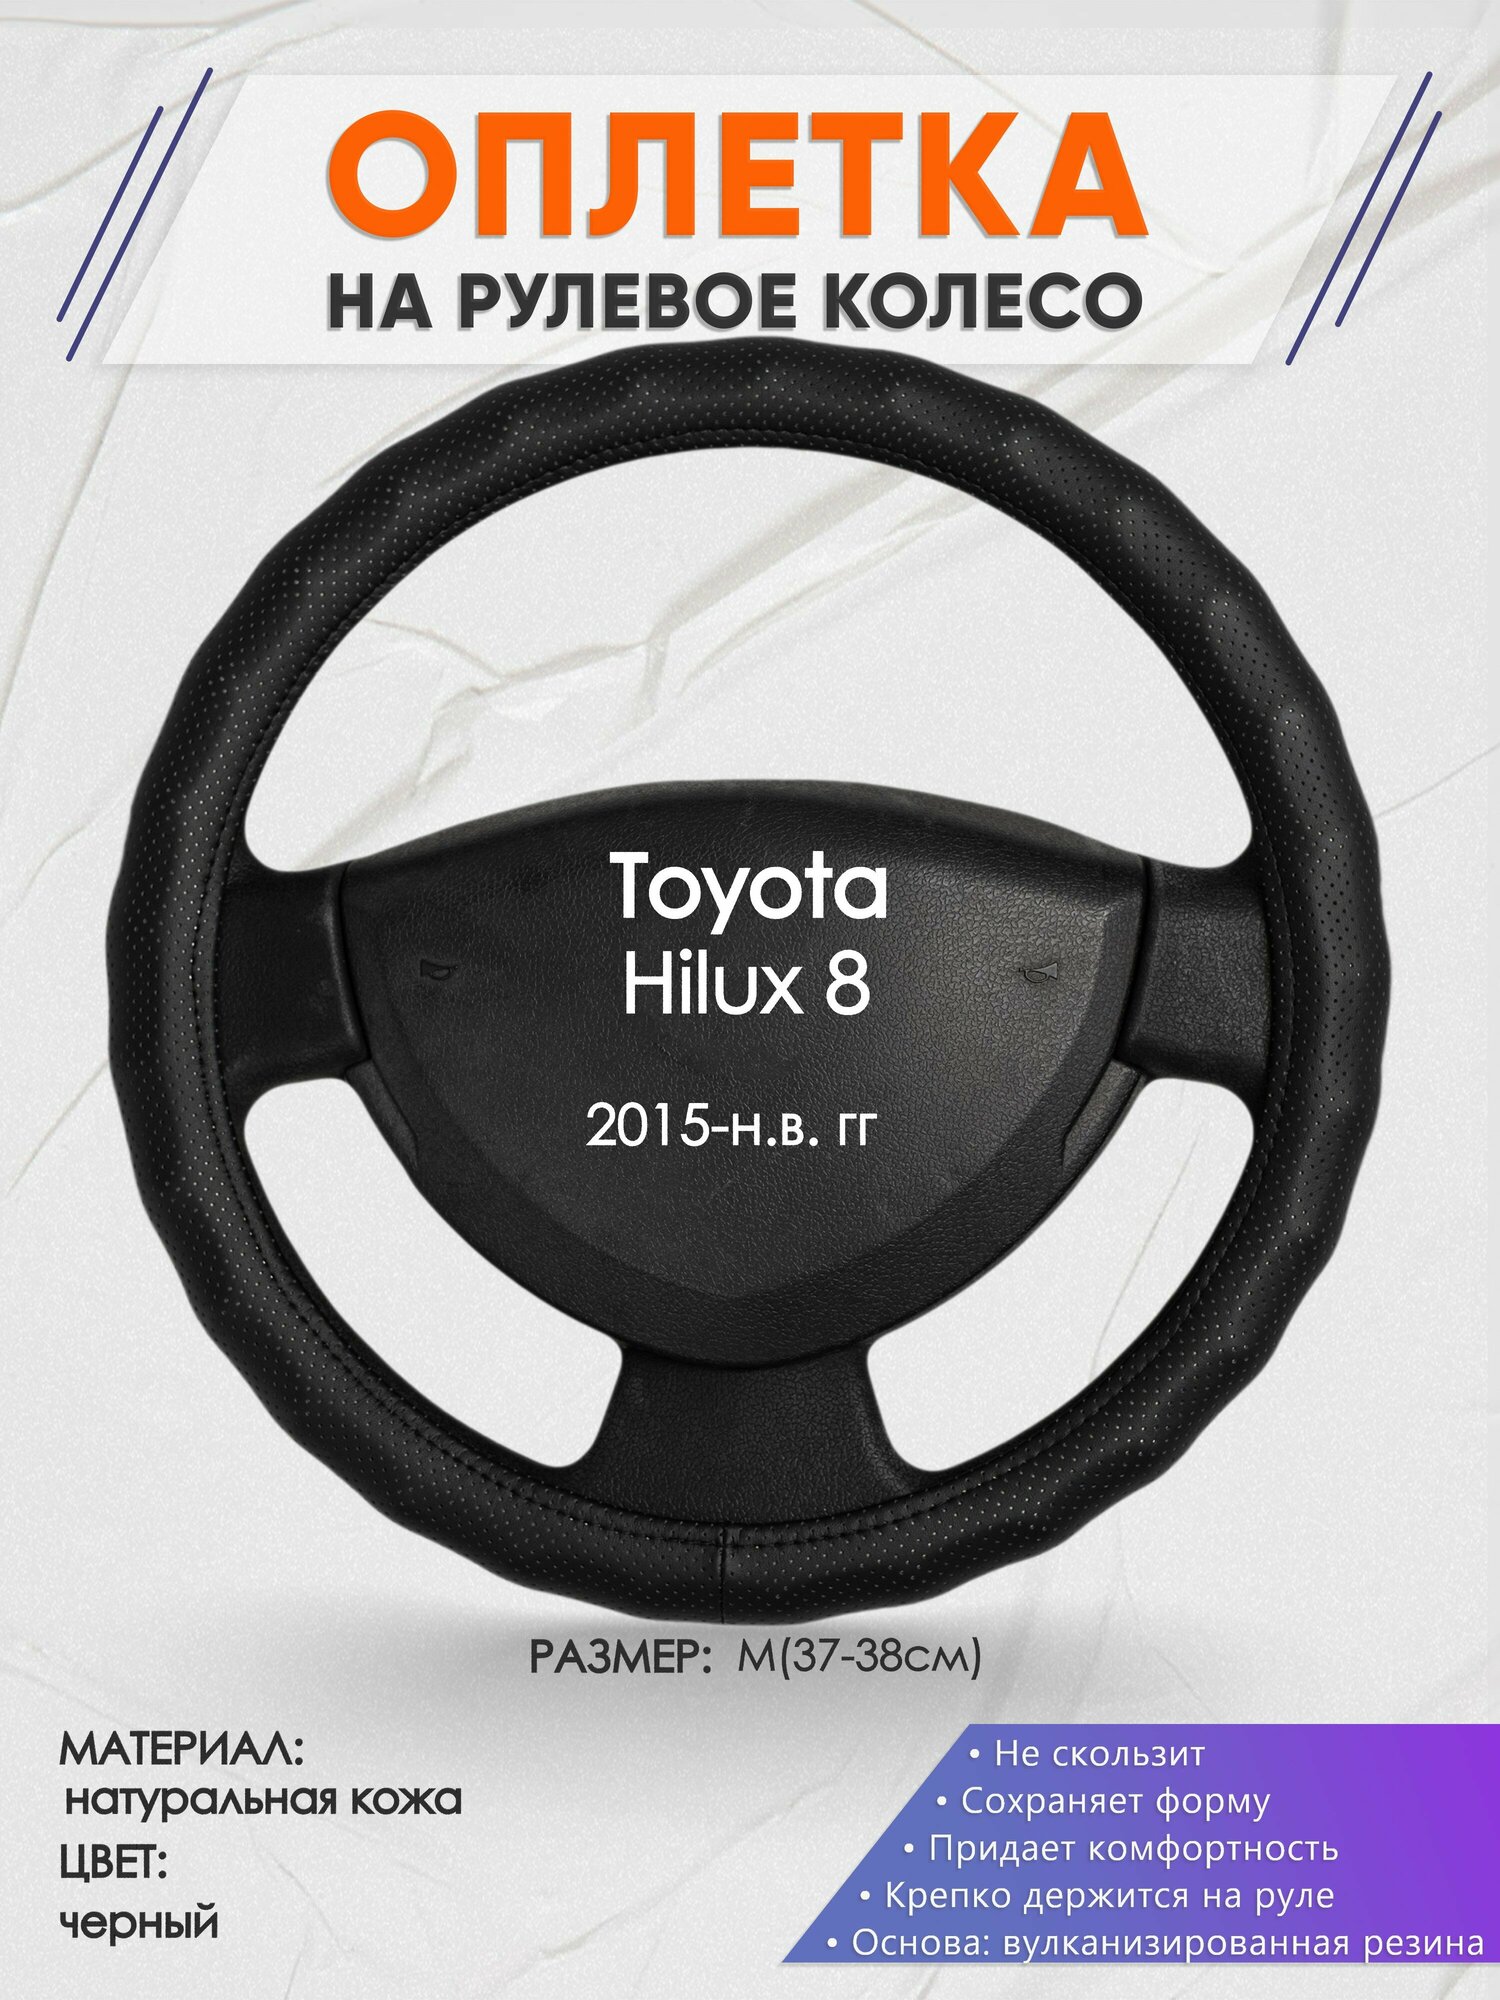 Оплетка на руль для Toyota Hilux 8(Тойота Хайлюкс 8) 2015-н. в, M(37-38см), Натуральная кожа 30